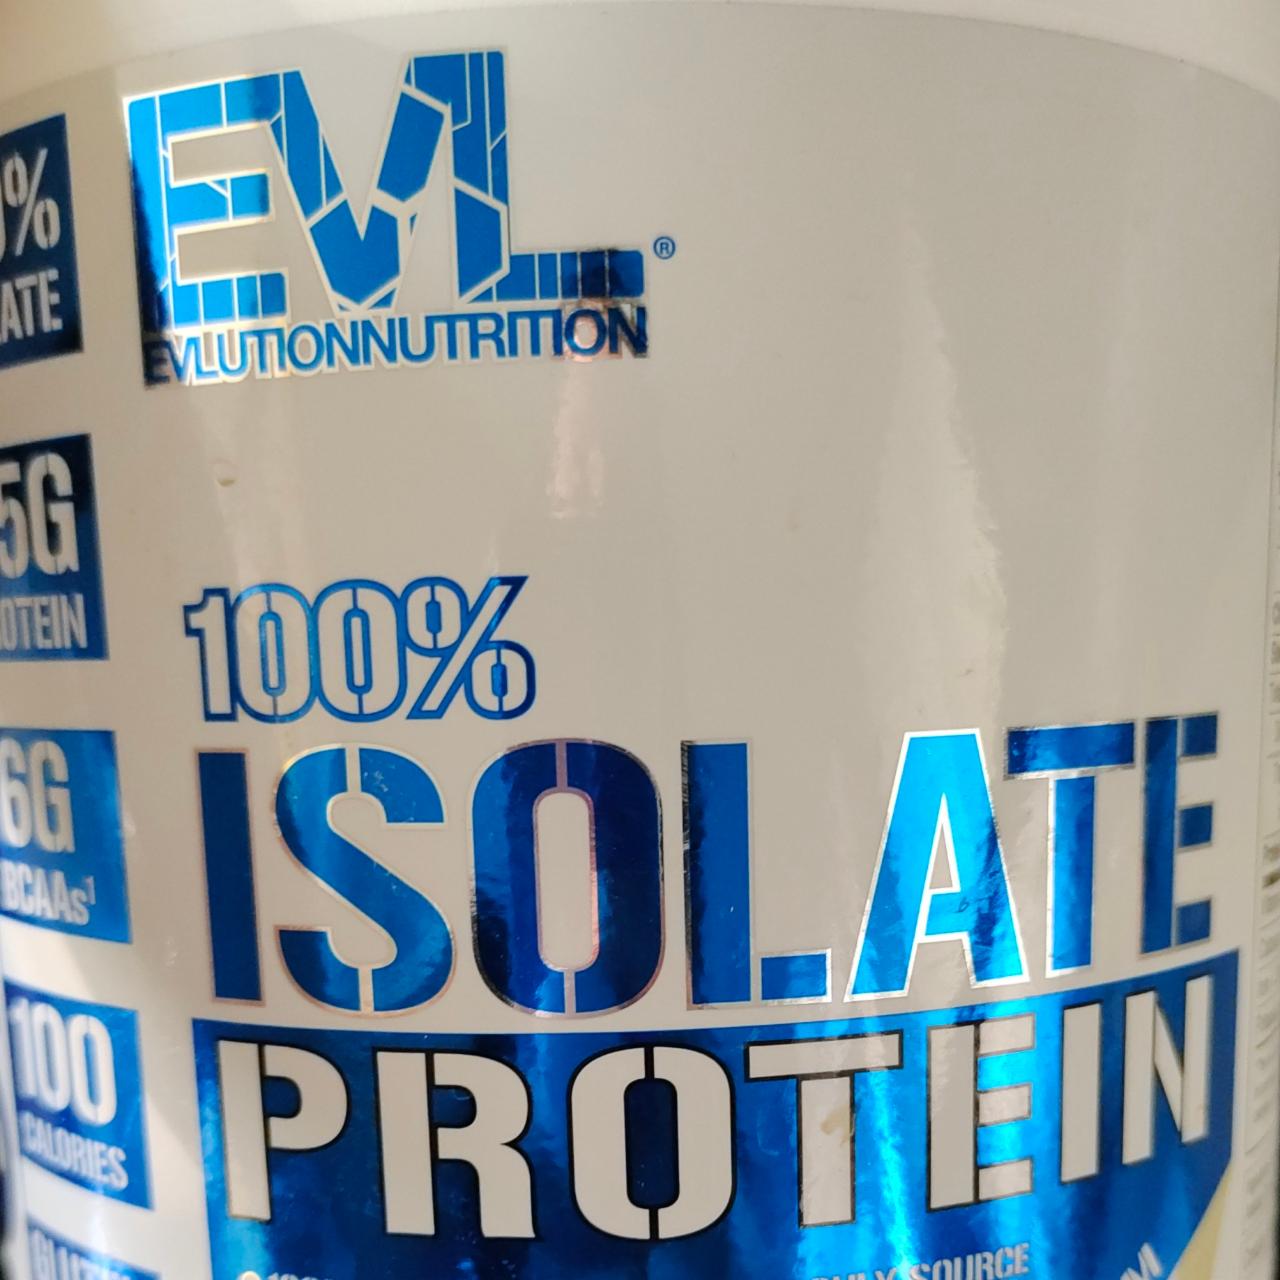 Фото - 100% Isolate Protein Vanilla Ice Cream EVLution Nutrition